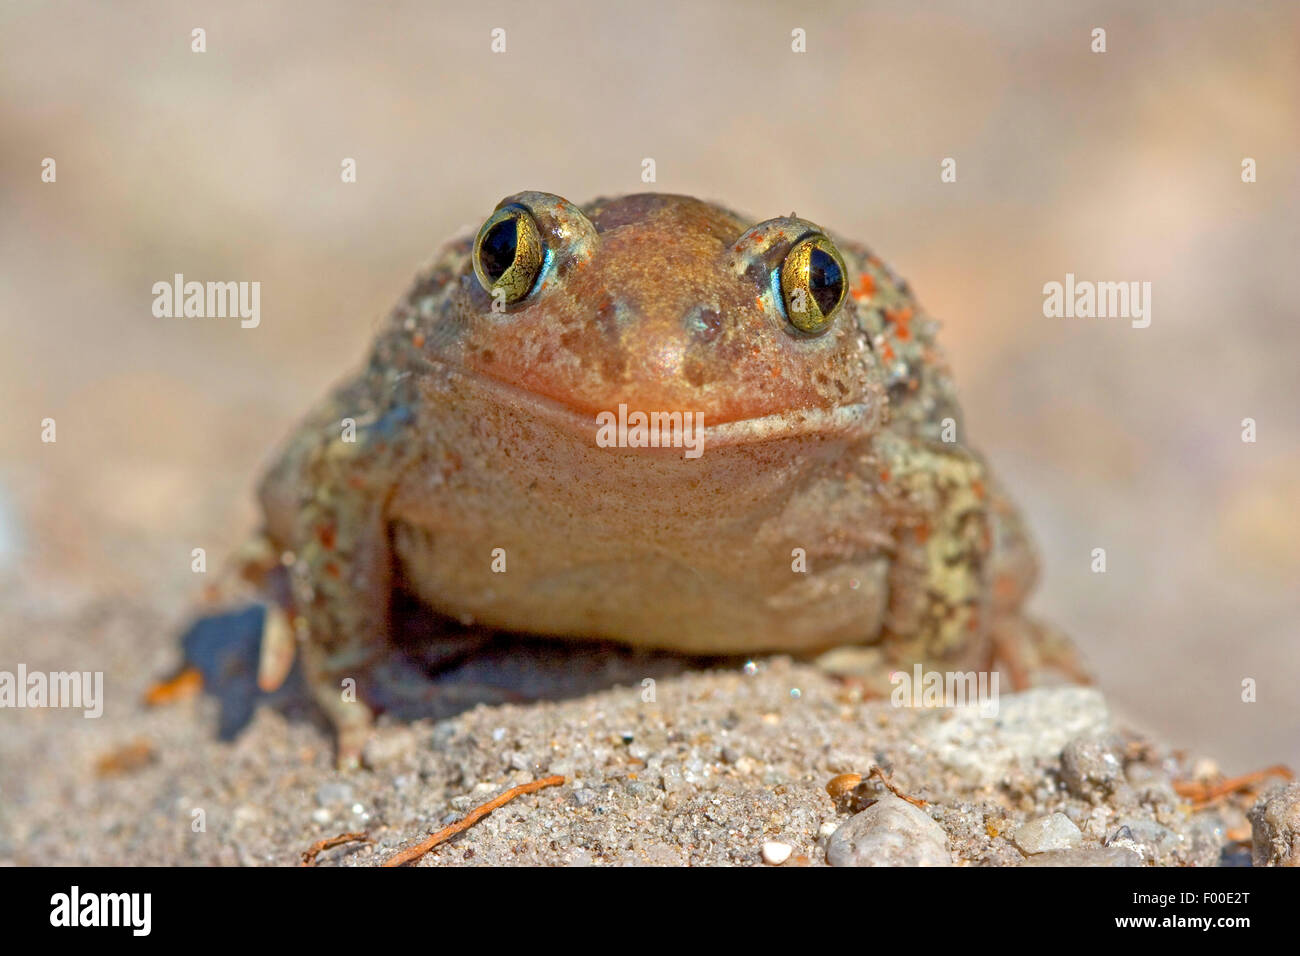 Común, ajo spadefoot toad (Pelobates fuscus), sentado en el suelo, vista frontal, Alemania Foto de stock